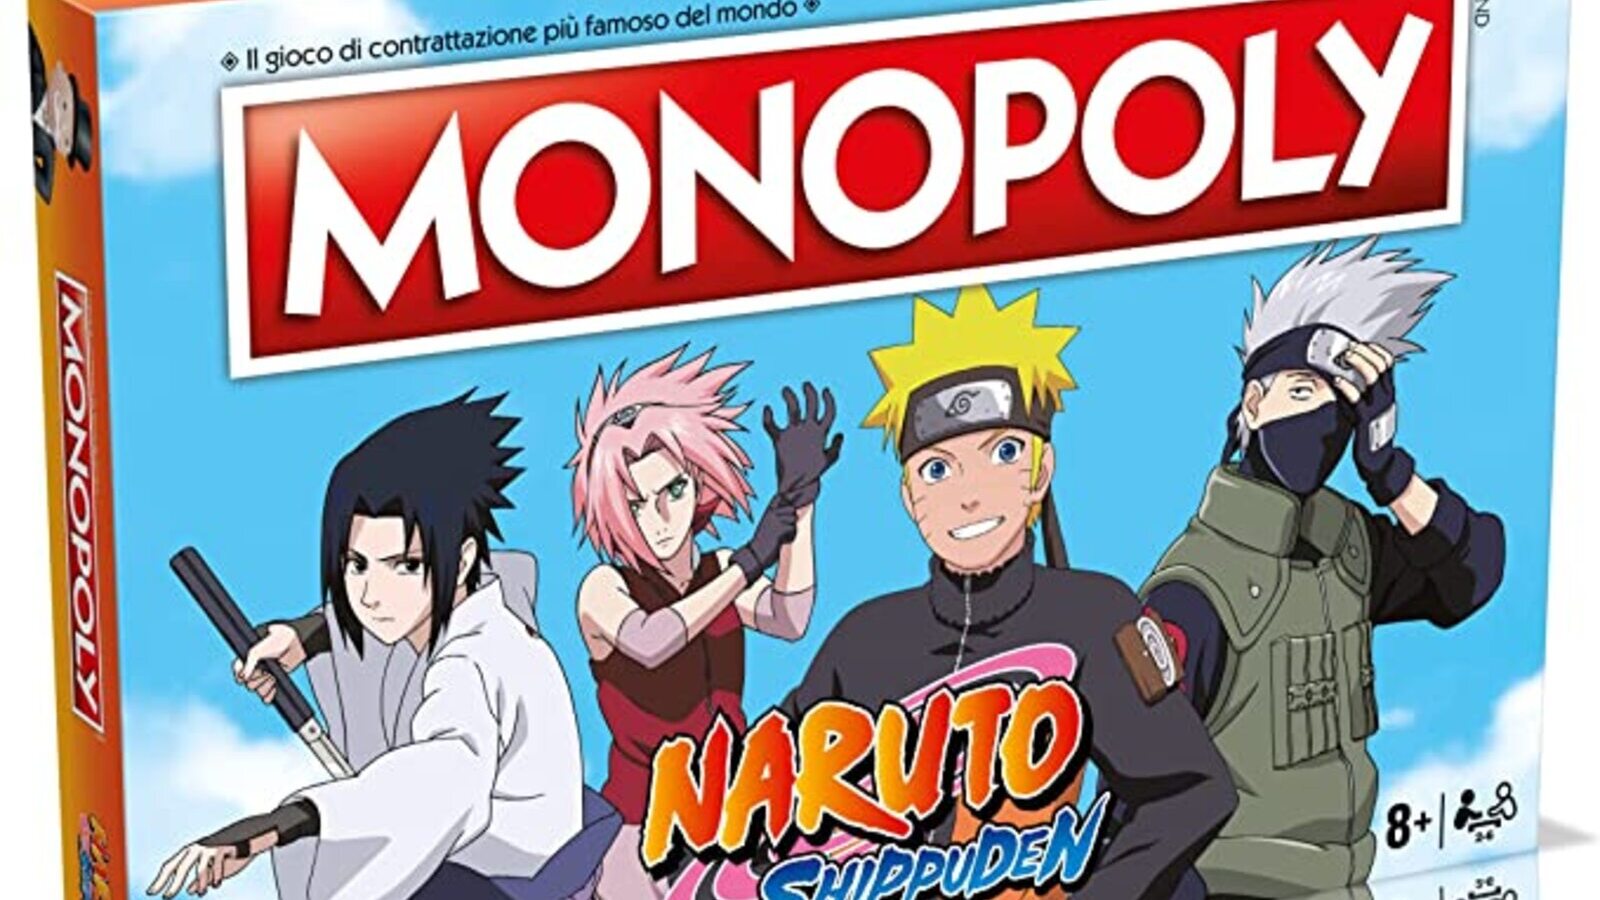 Naruto Shippuden: il Monopoly ispirato alle avventure del celebre ninja è attualmente in sconto su Amazon